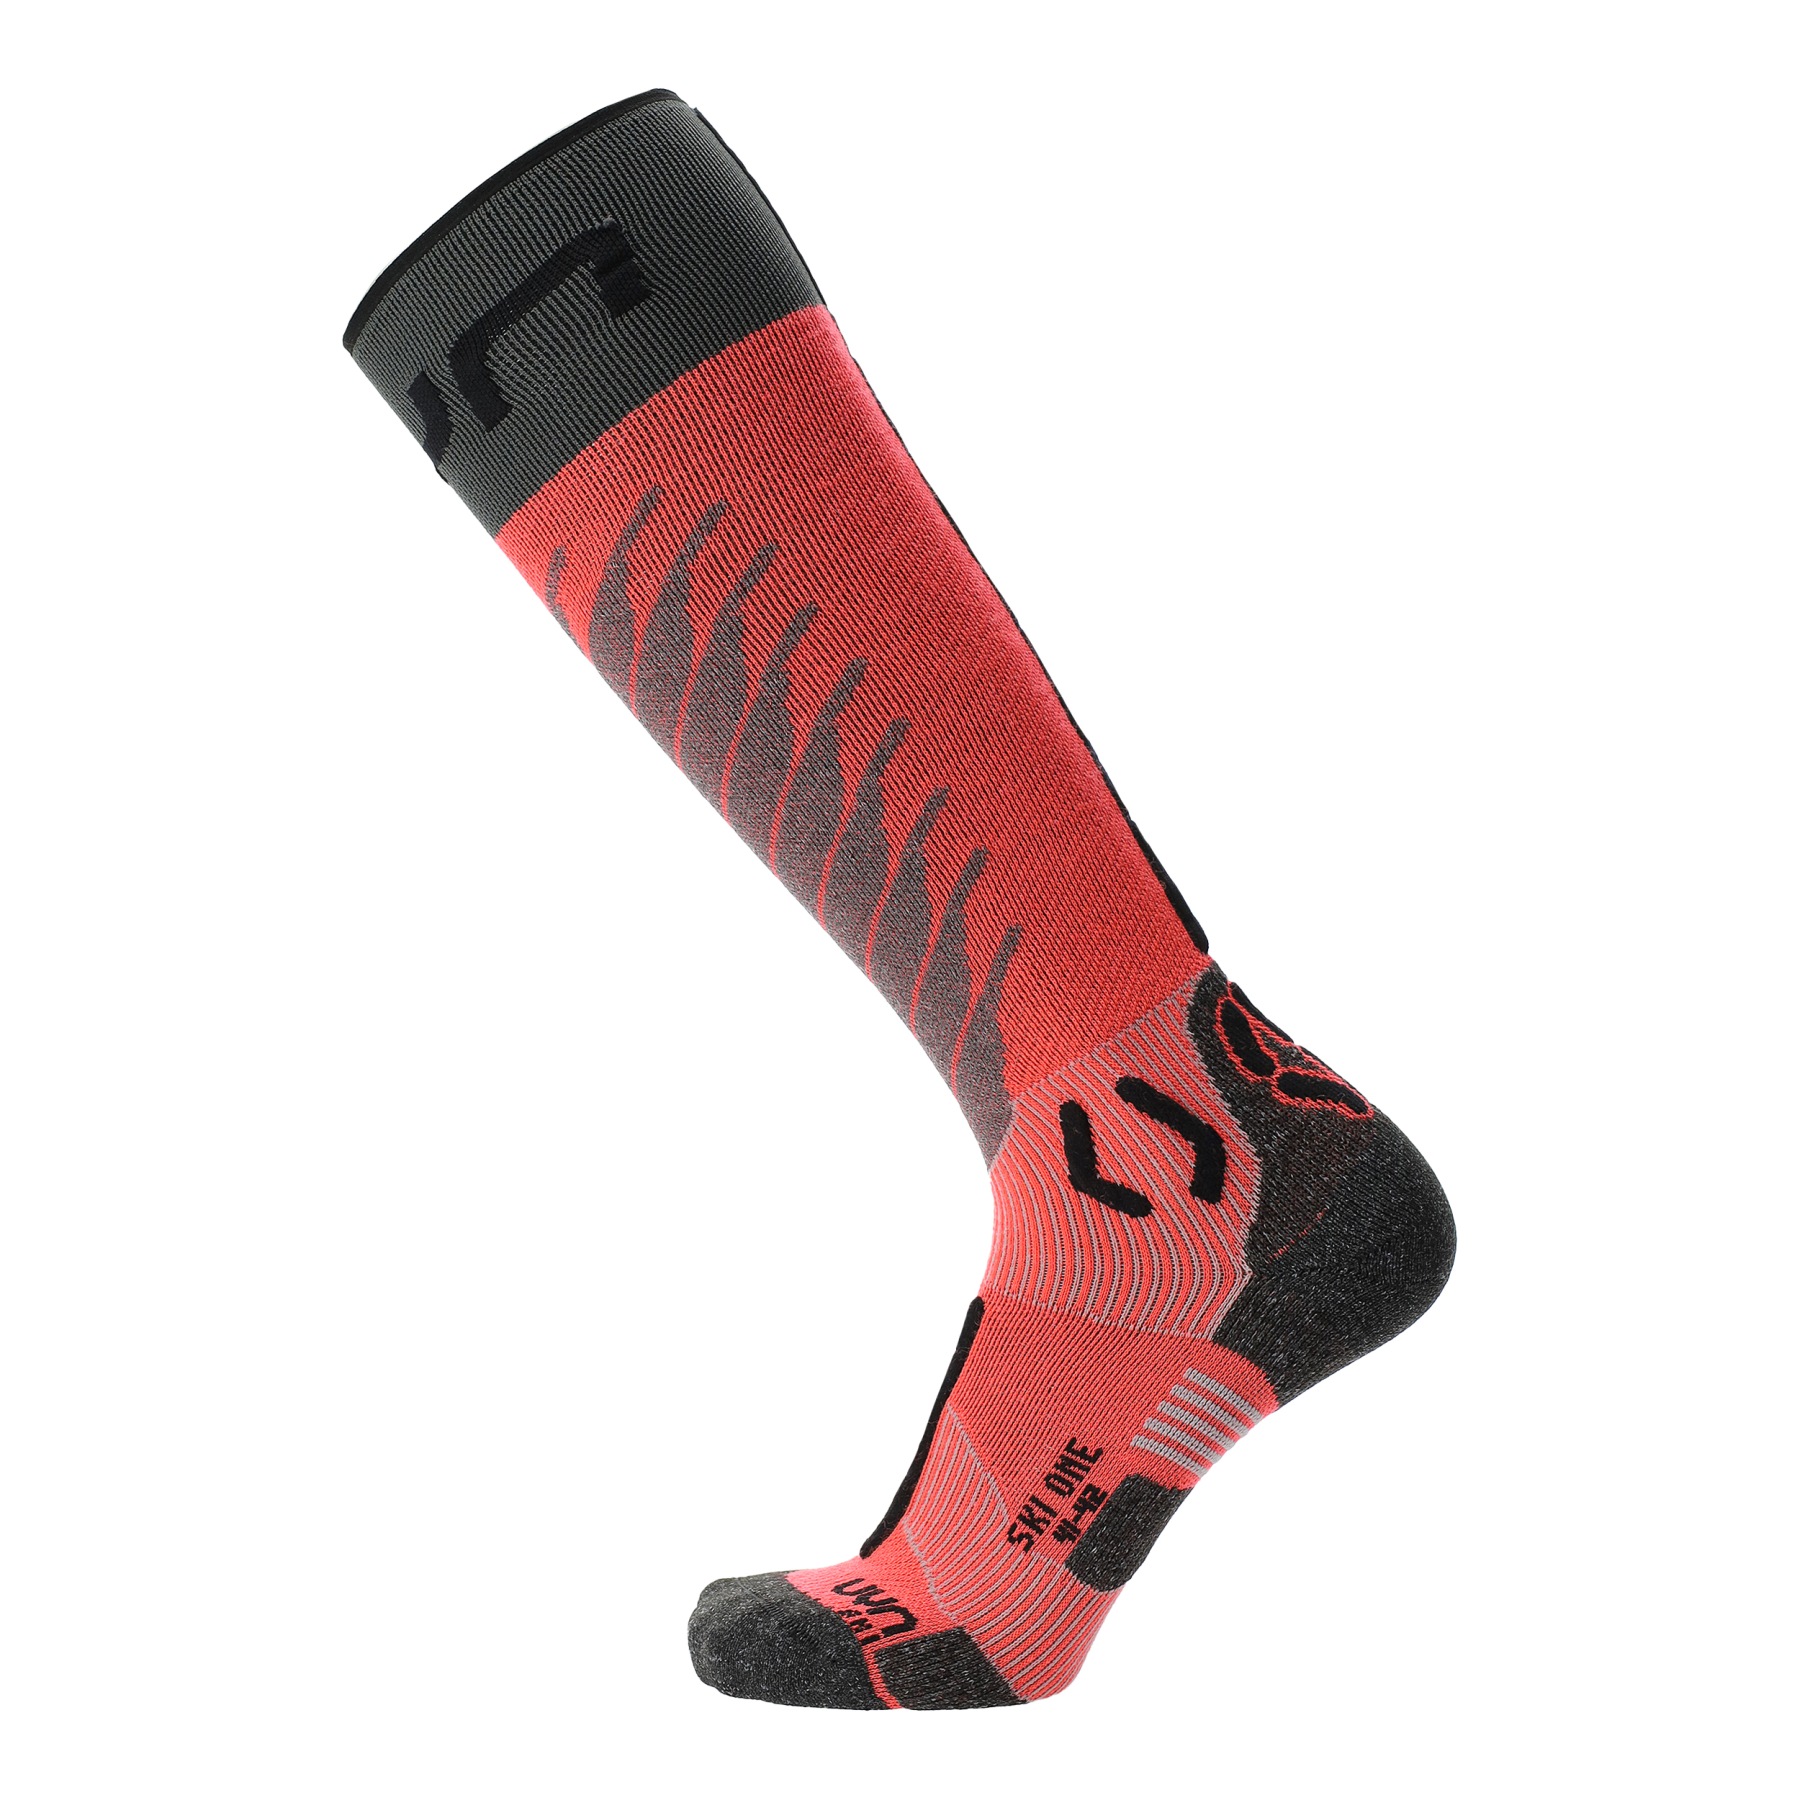 Produktbild von UYN Ski One Merino Socken Damen - Pink/Schwarz